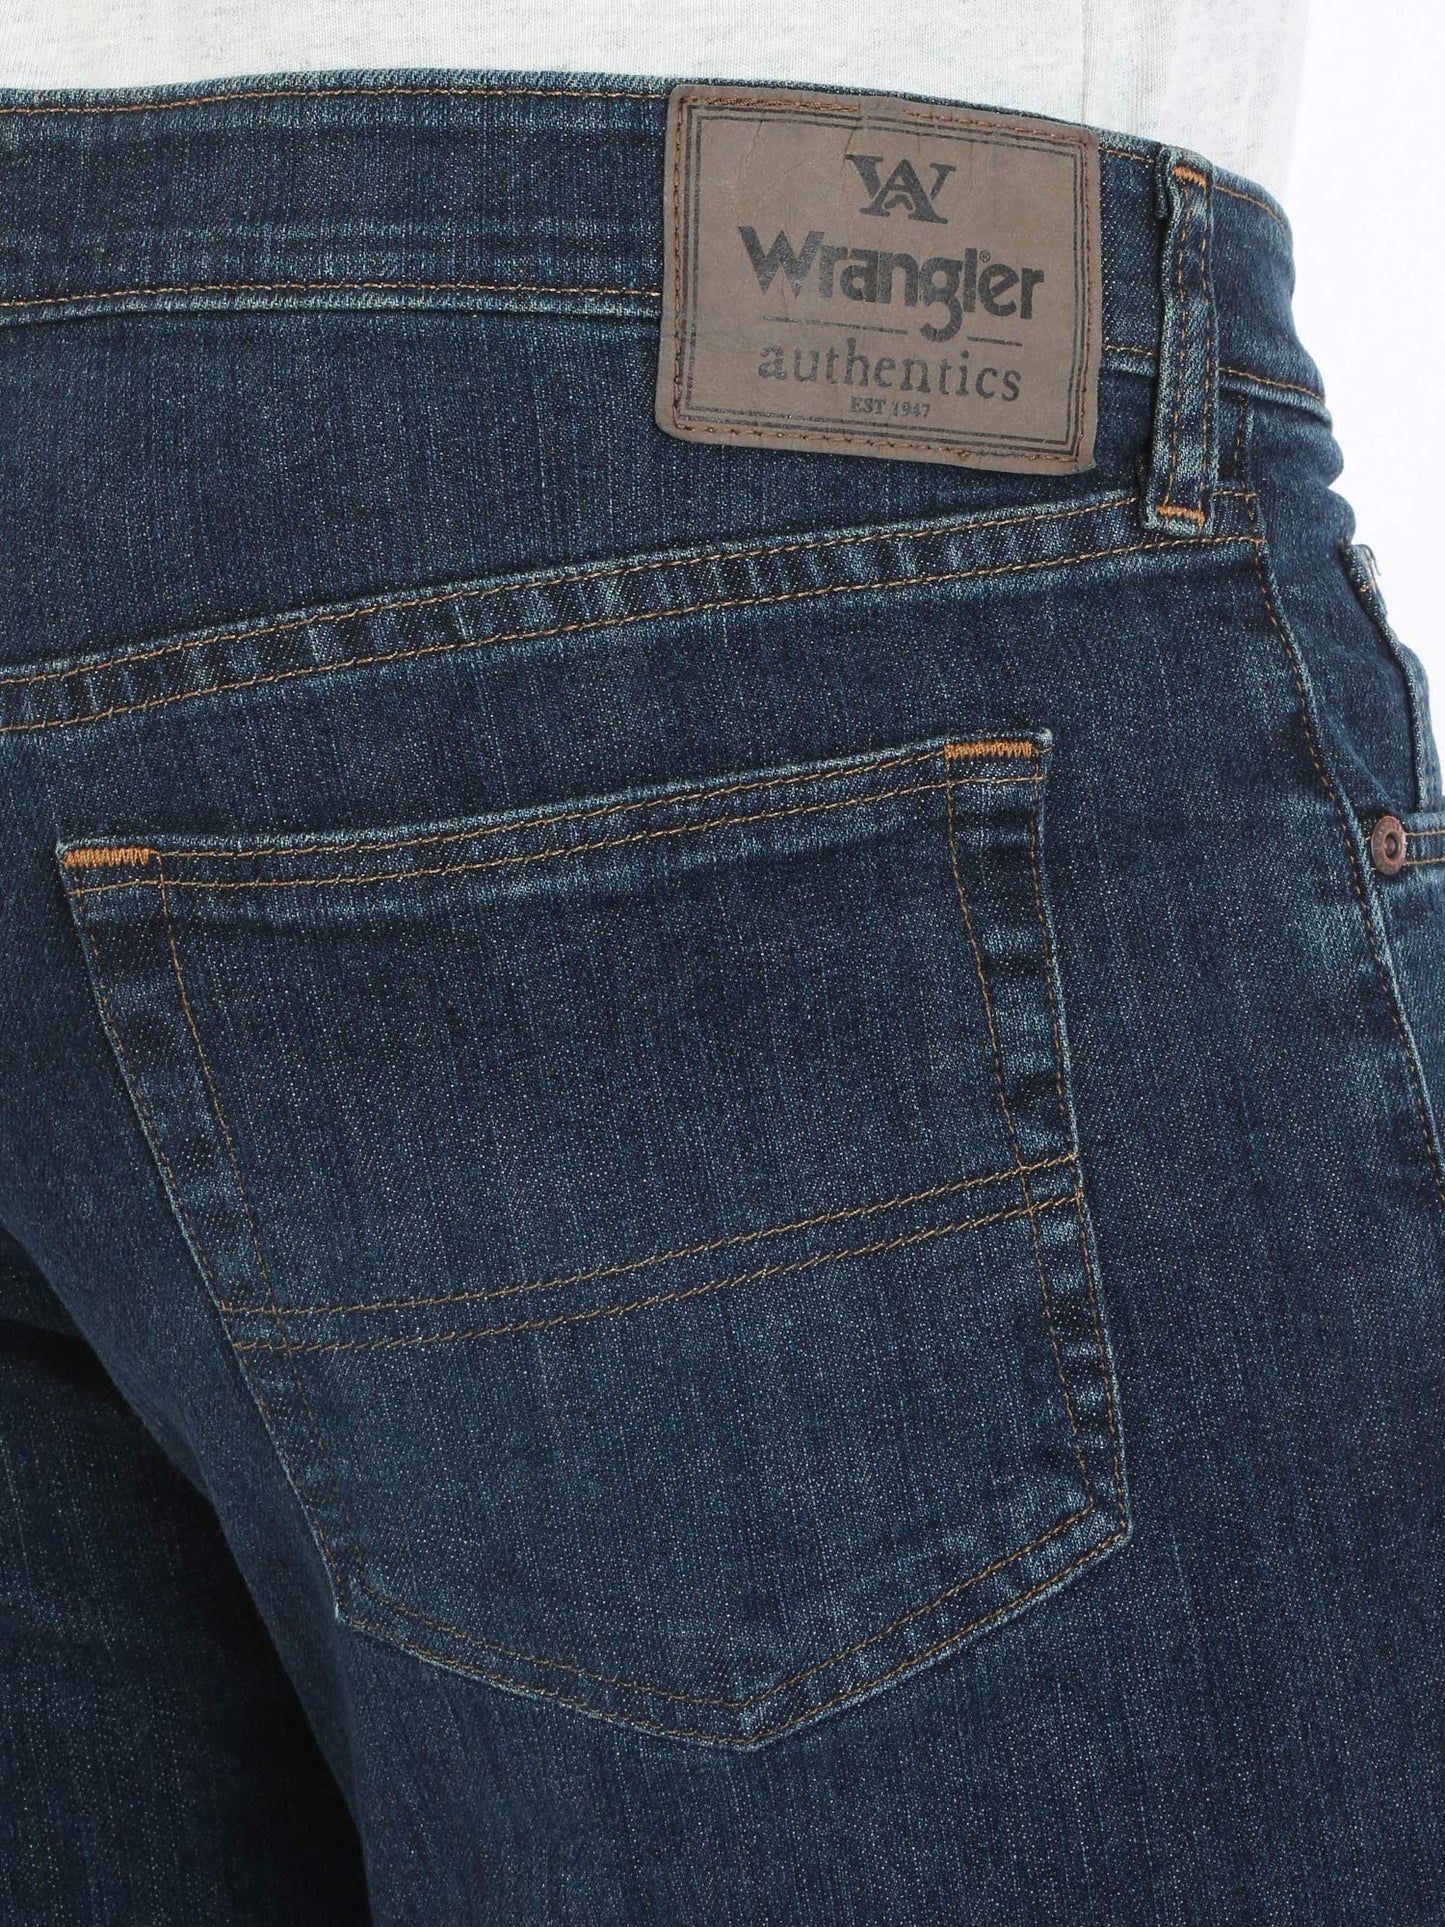 Wrangler Authentics Men's Comfort Flex Waist Relaxed Fit Jean, Carbon, 36W x 30L